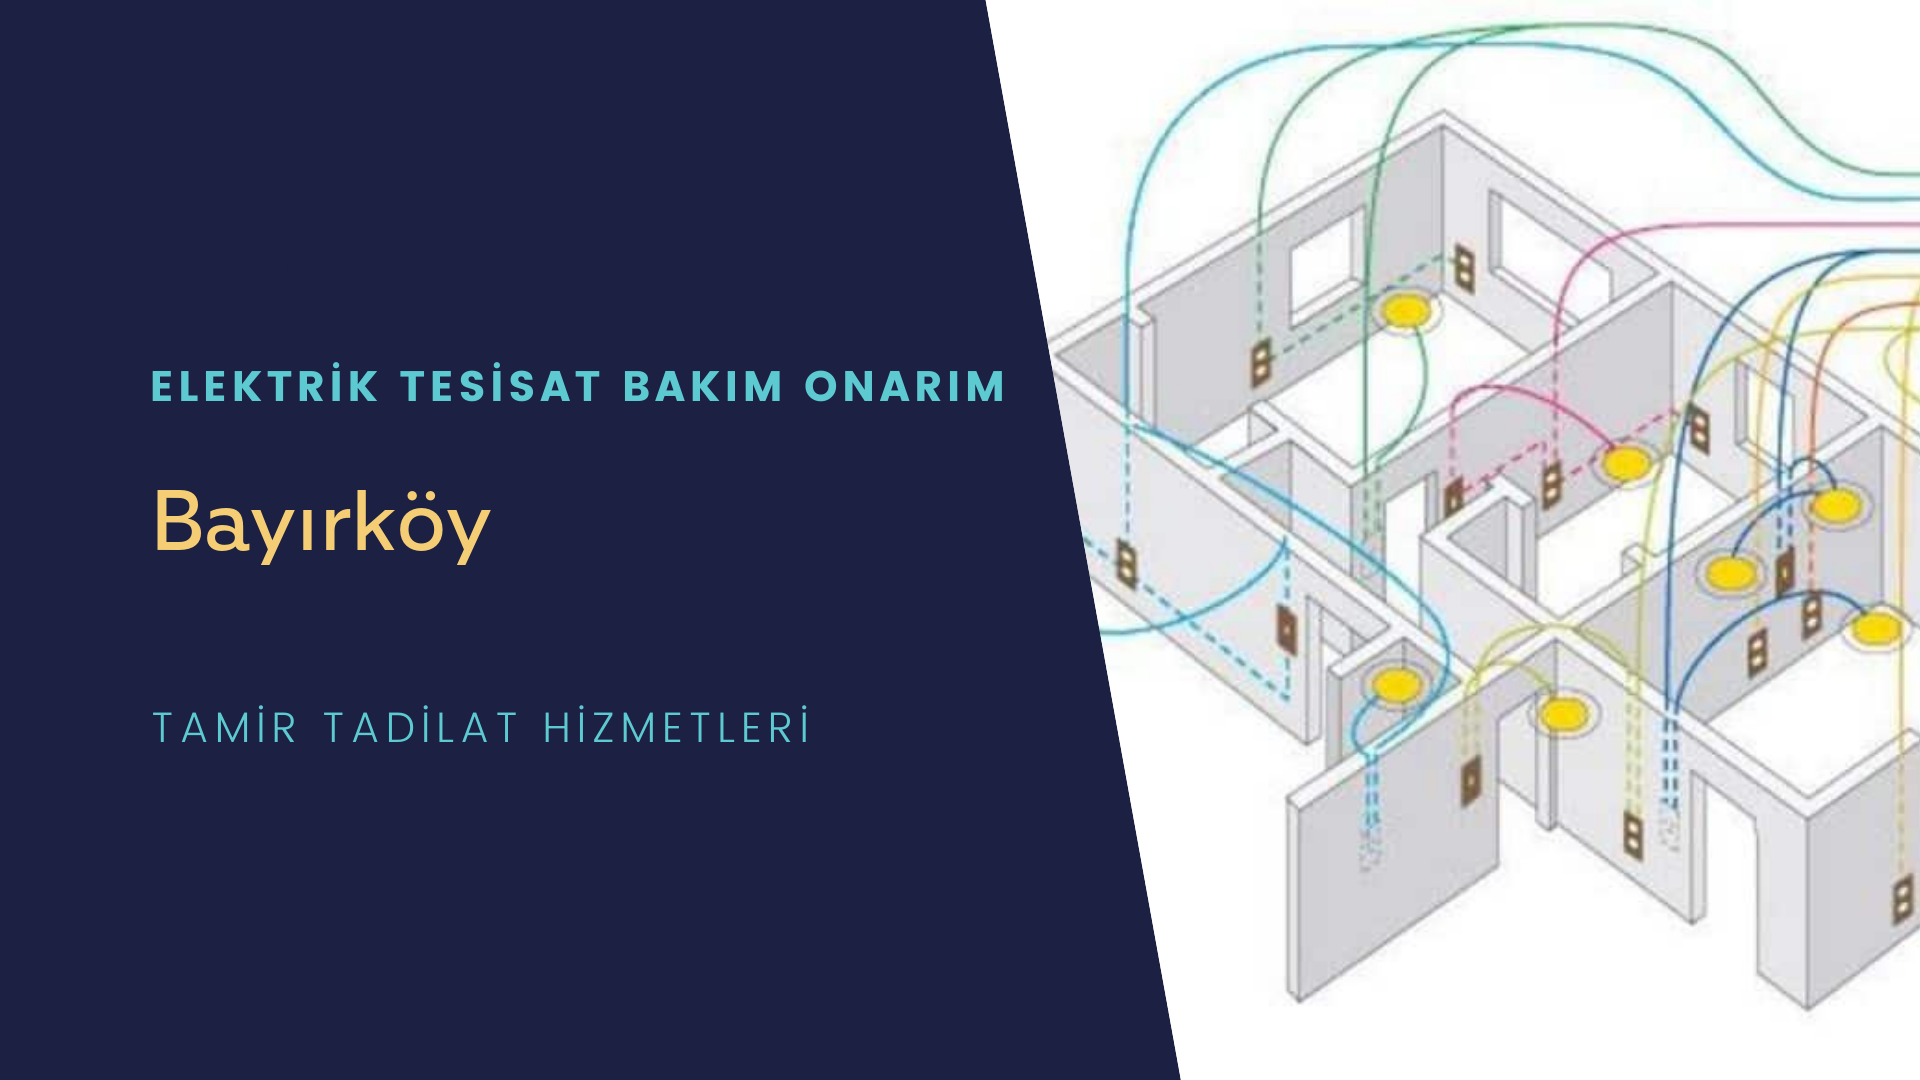 Bayırköy'de elektrik tesisatı ustalarımı arıyorsunuz doğru adrestenizi Bayırköy elektrik tesisatı ustalarımız 7/24 sizlere hizmet vermekten mutluluk duyar.